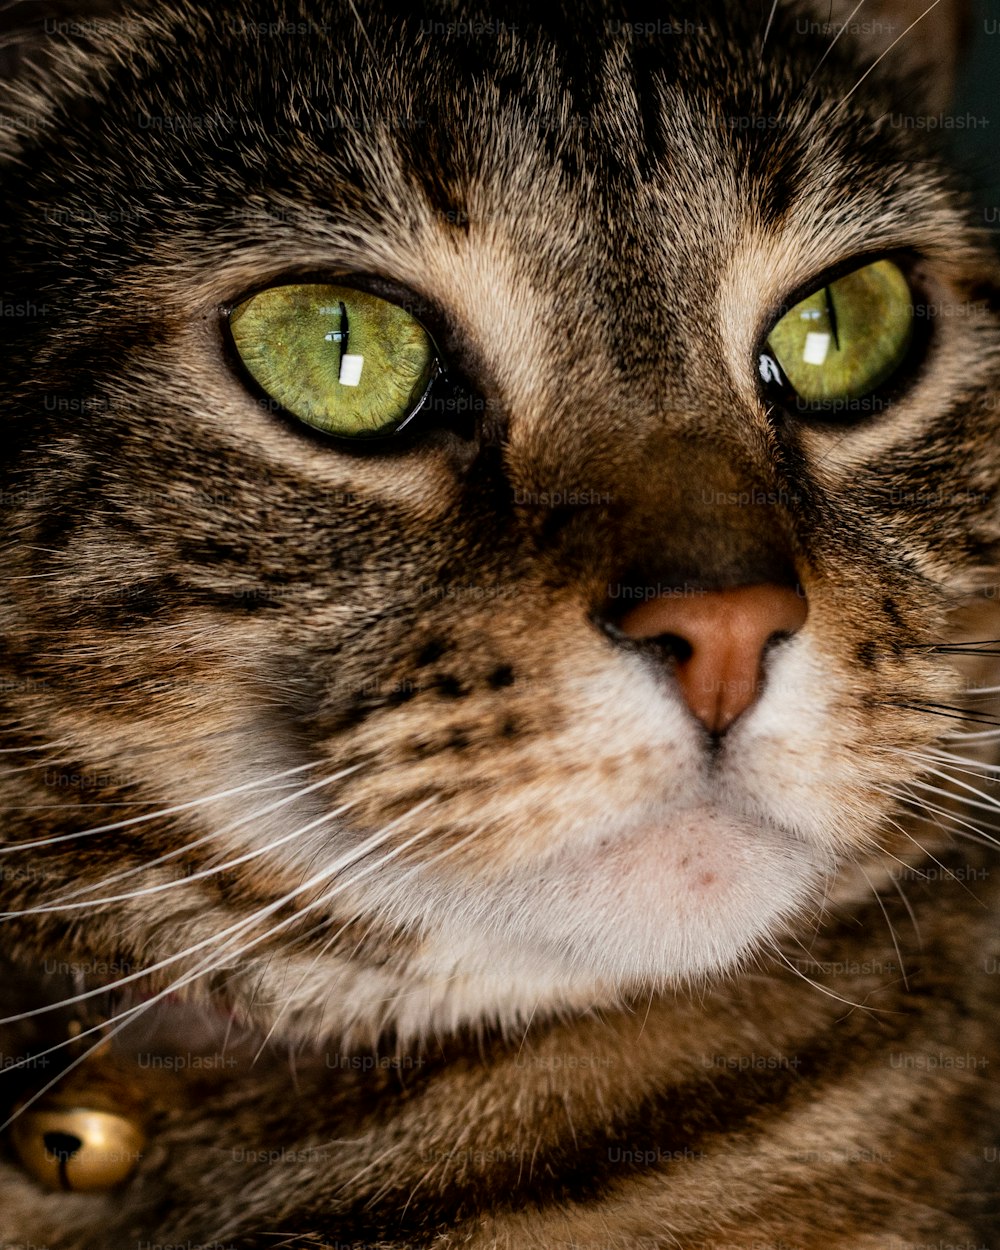 緑色の目をした猫の接写